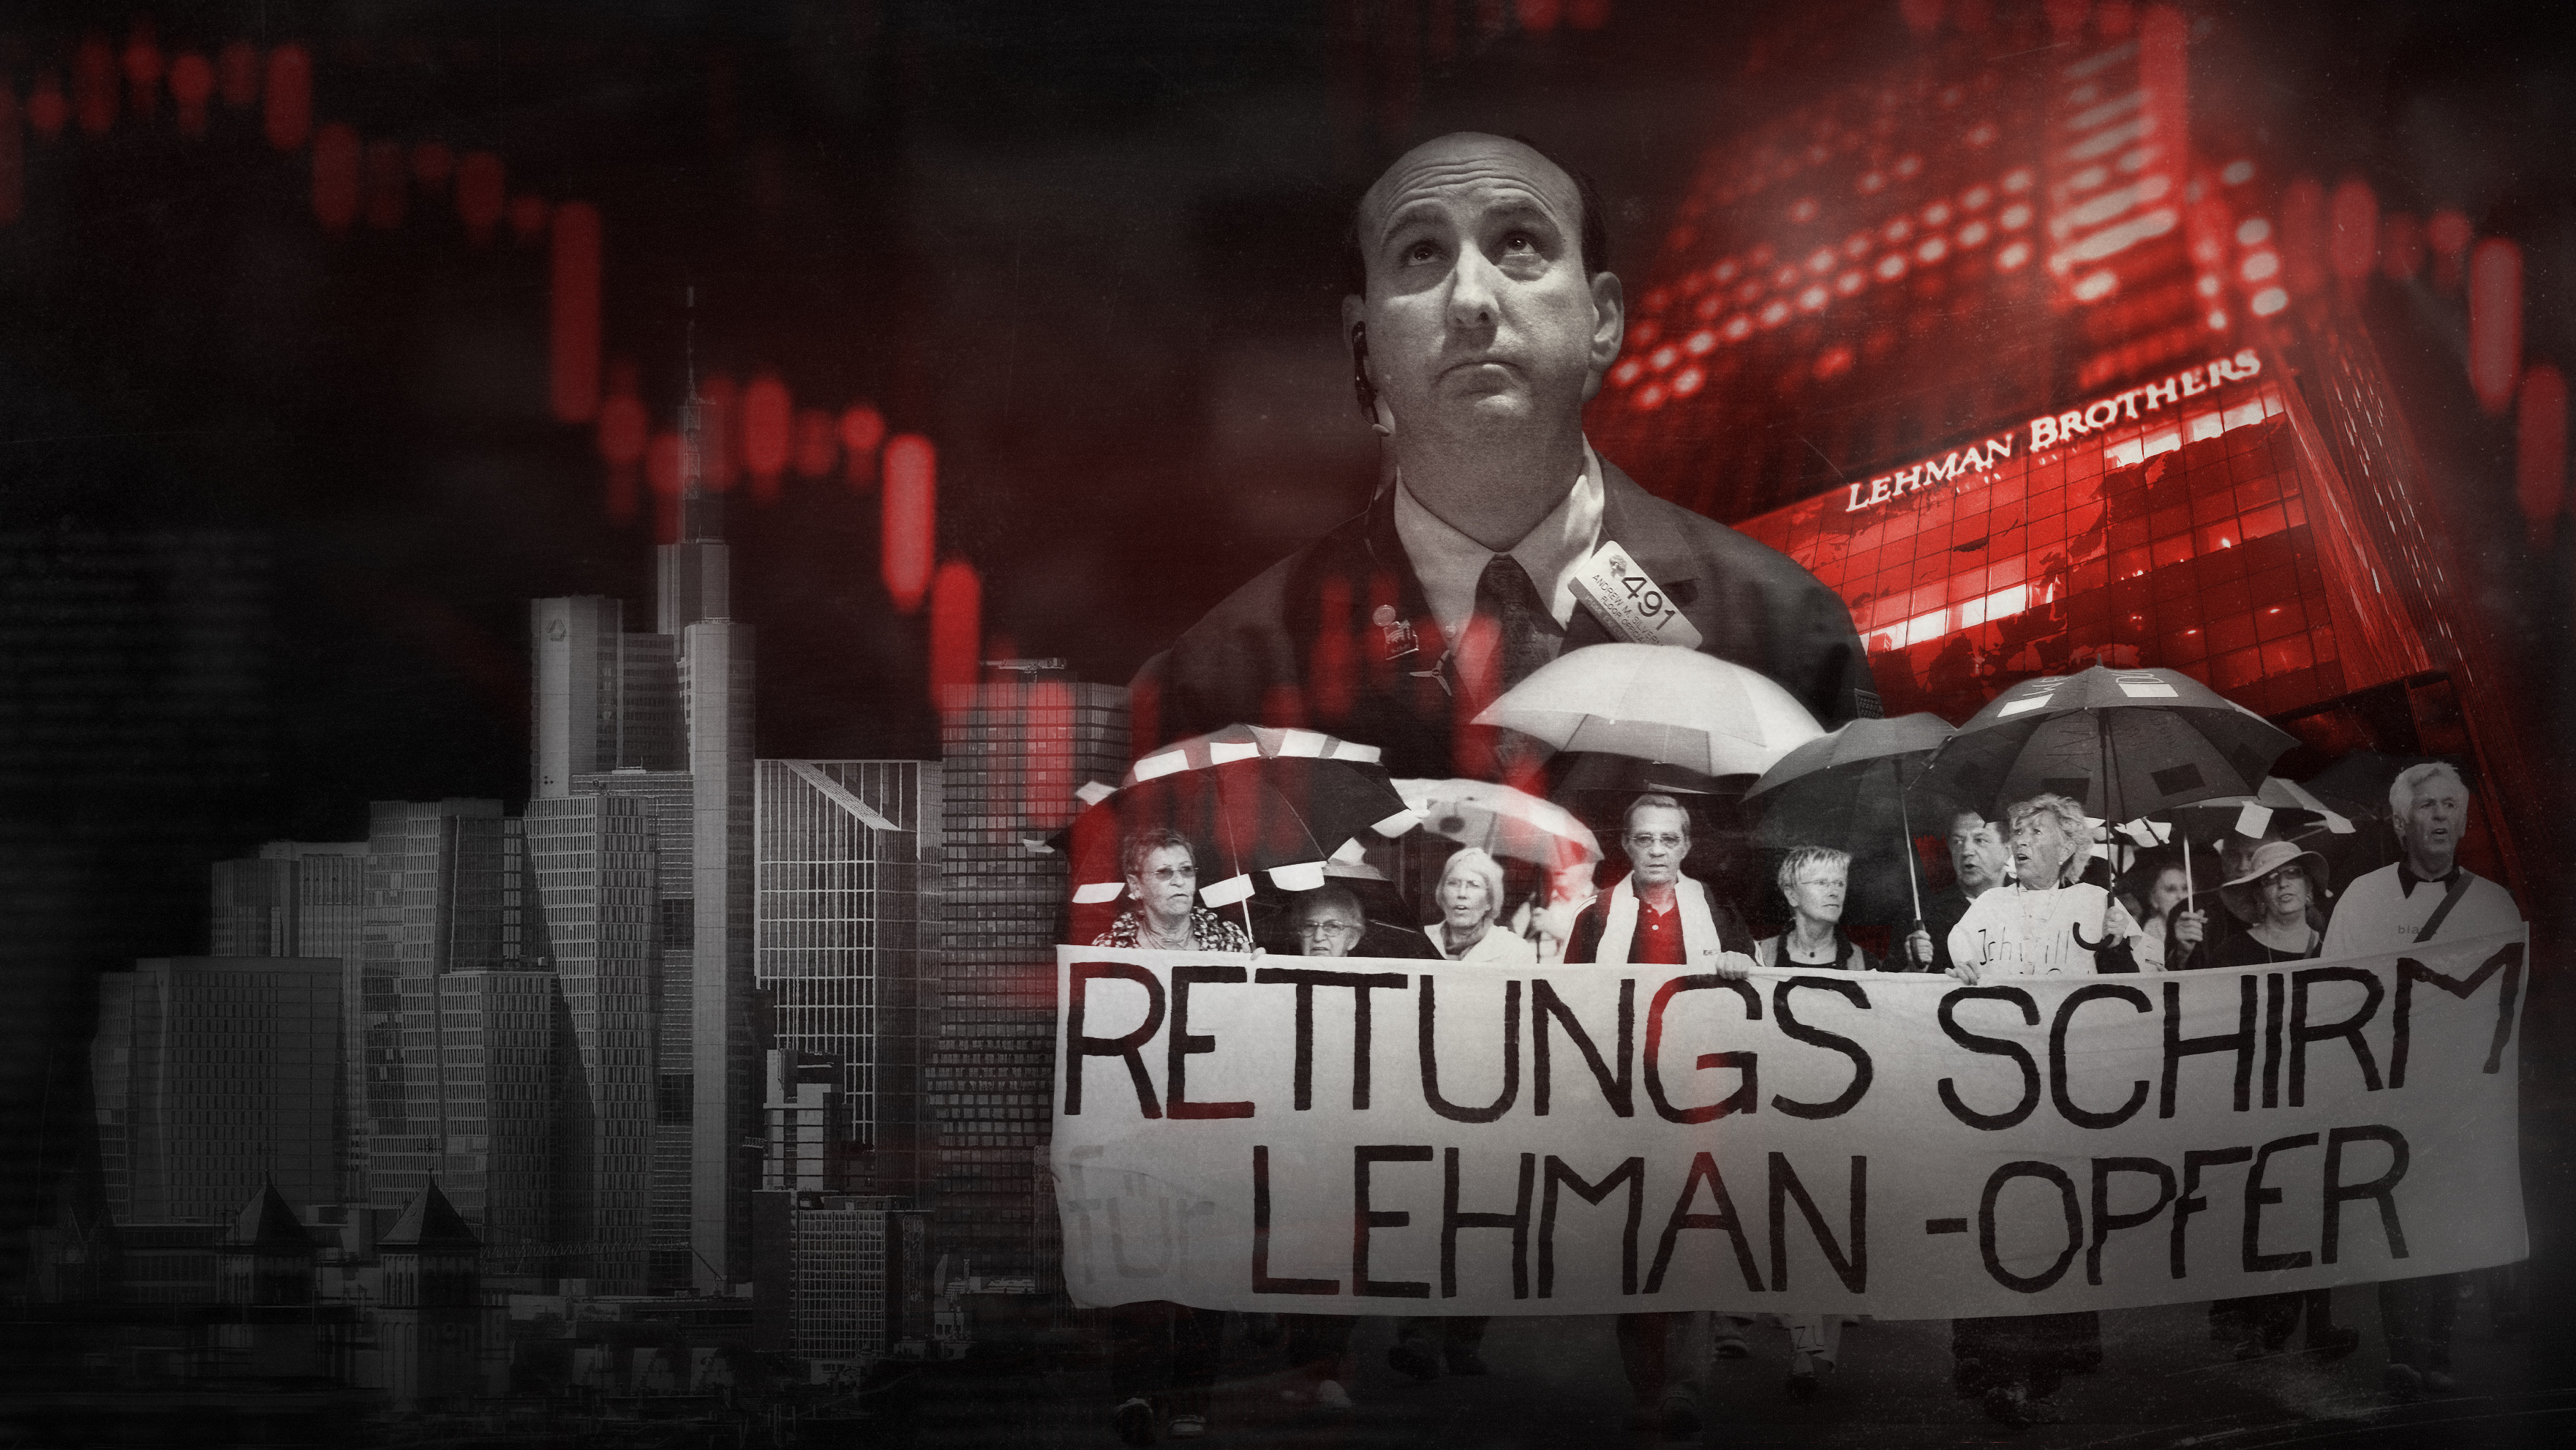 Im Hintergrund steht ein rotgefärbtes Gebäude an dem die Leuchtschrift "Lehman Brothers" angebracht ist. Davor liegen drei Schwarz-Weiß-Fotos: Die New Yorker Skyline, ein Banker der nach oben schaut und mehrere Personen mit aufgespannten Schirmen bei einer Demonstration mit dem Banner "Rettungs Schirm Lehman-Opfer".